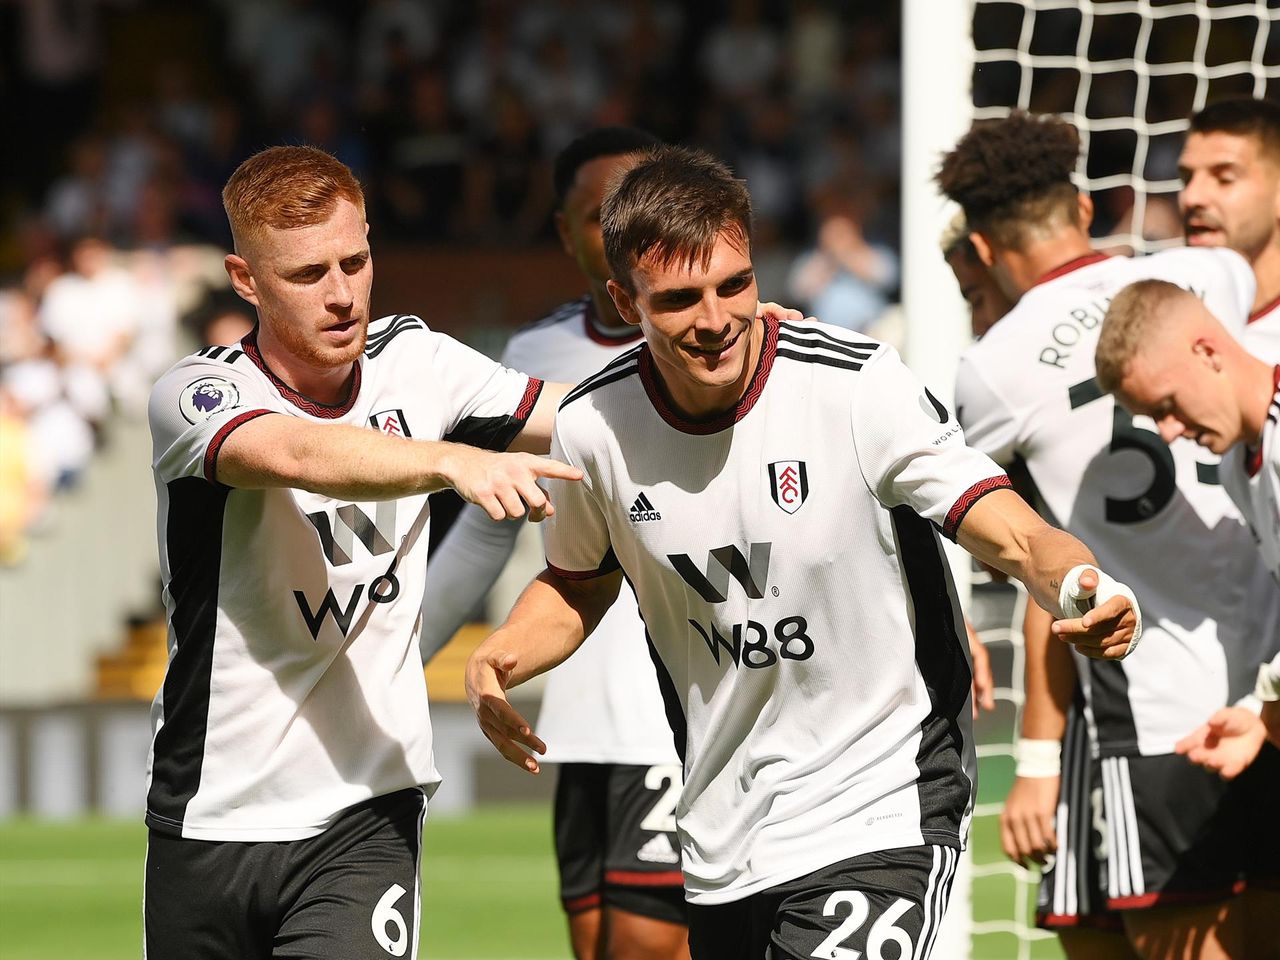 Dù mới lên hạng nhưng Fulham đang có một mùa giải ấn tượng